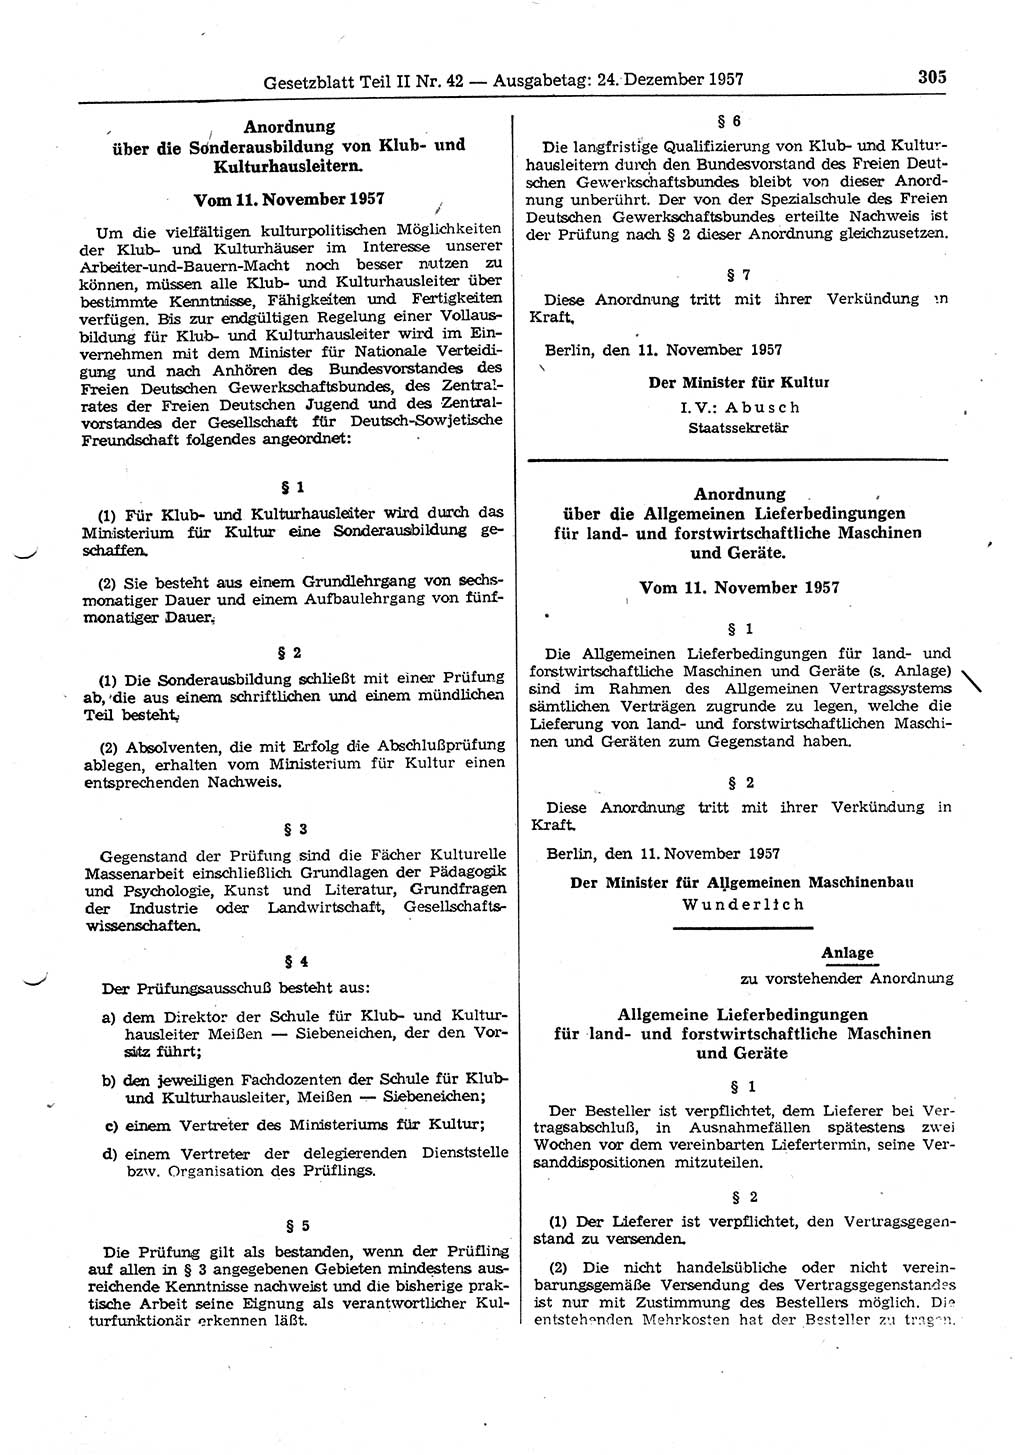 Gesetzblatt (GBl.) der Deutschen Demokratischen Republik (DDR) Teil ⅠⅠ 1957, Seite 305 (GBl. DDR ⅠⅠ 1957, S. 305)